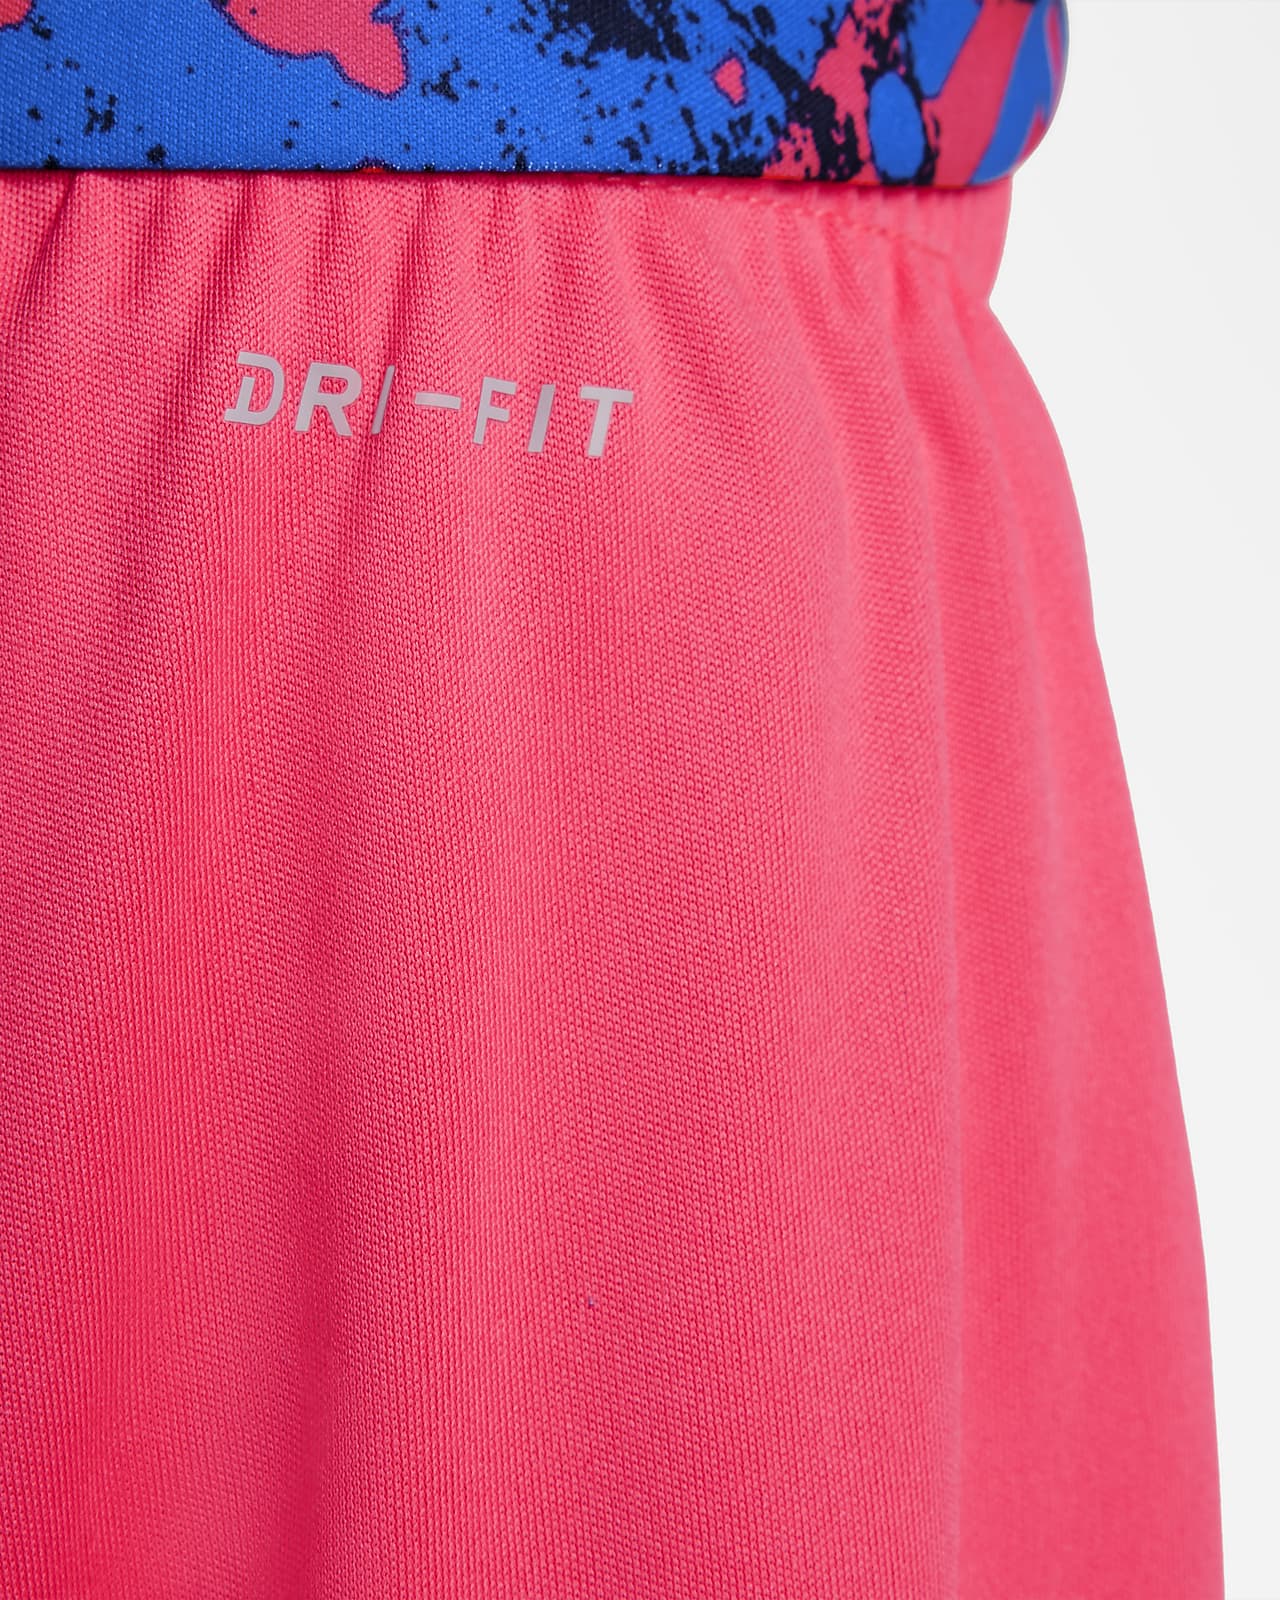 Nike Dri-FIT (12-24M) T-Shirt and Shorts Set. Nike.com